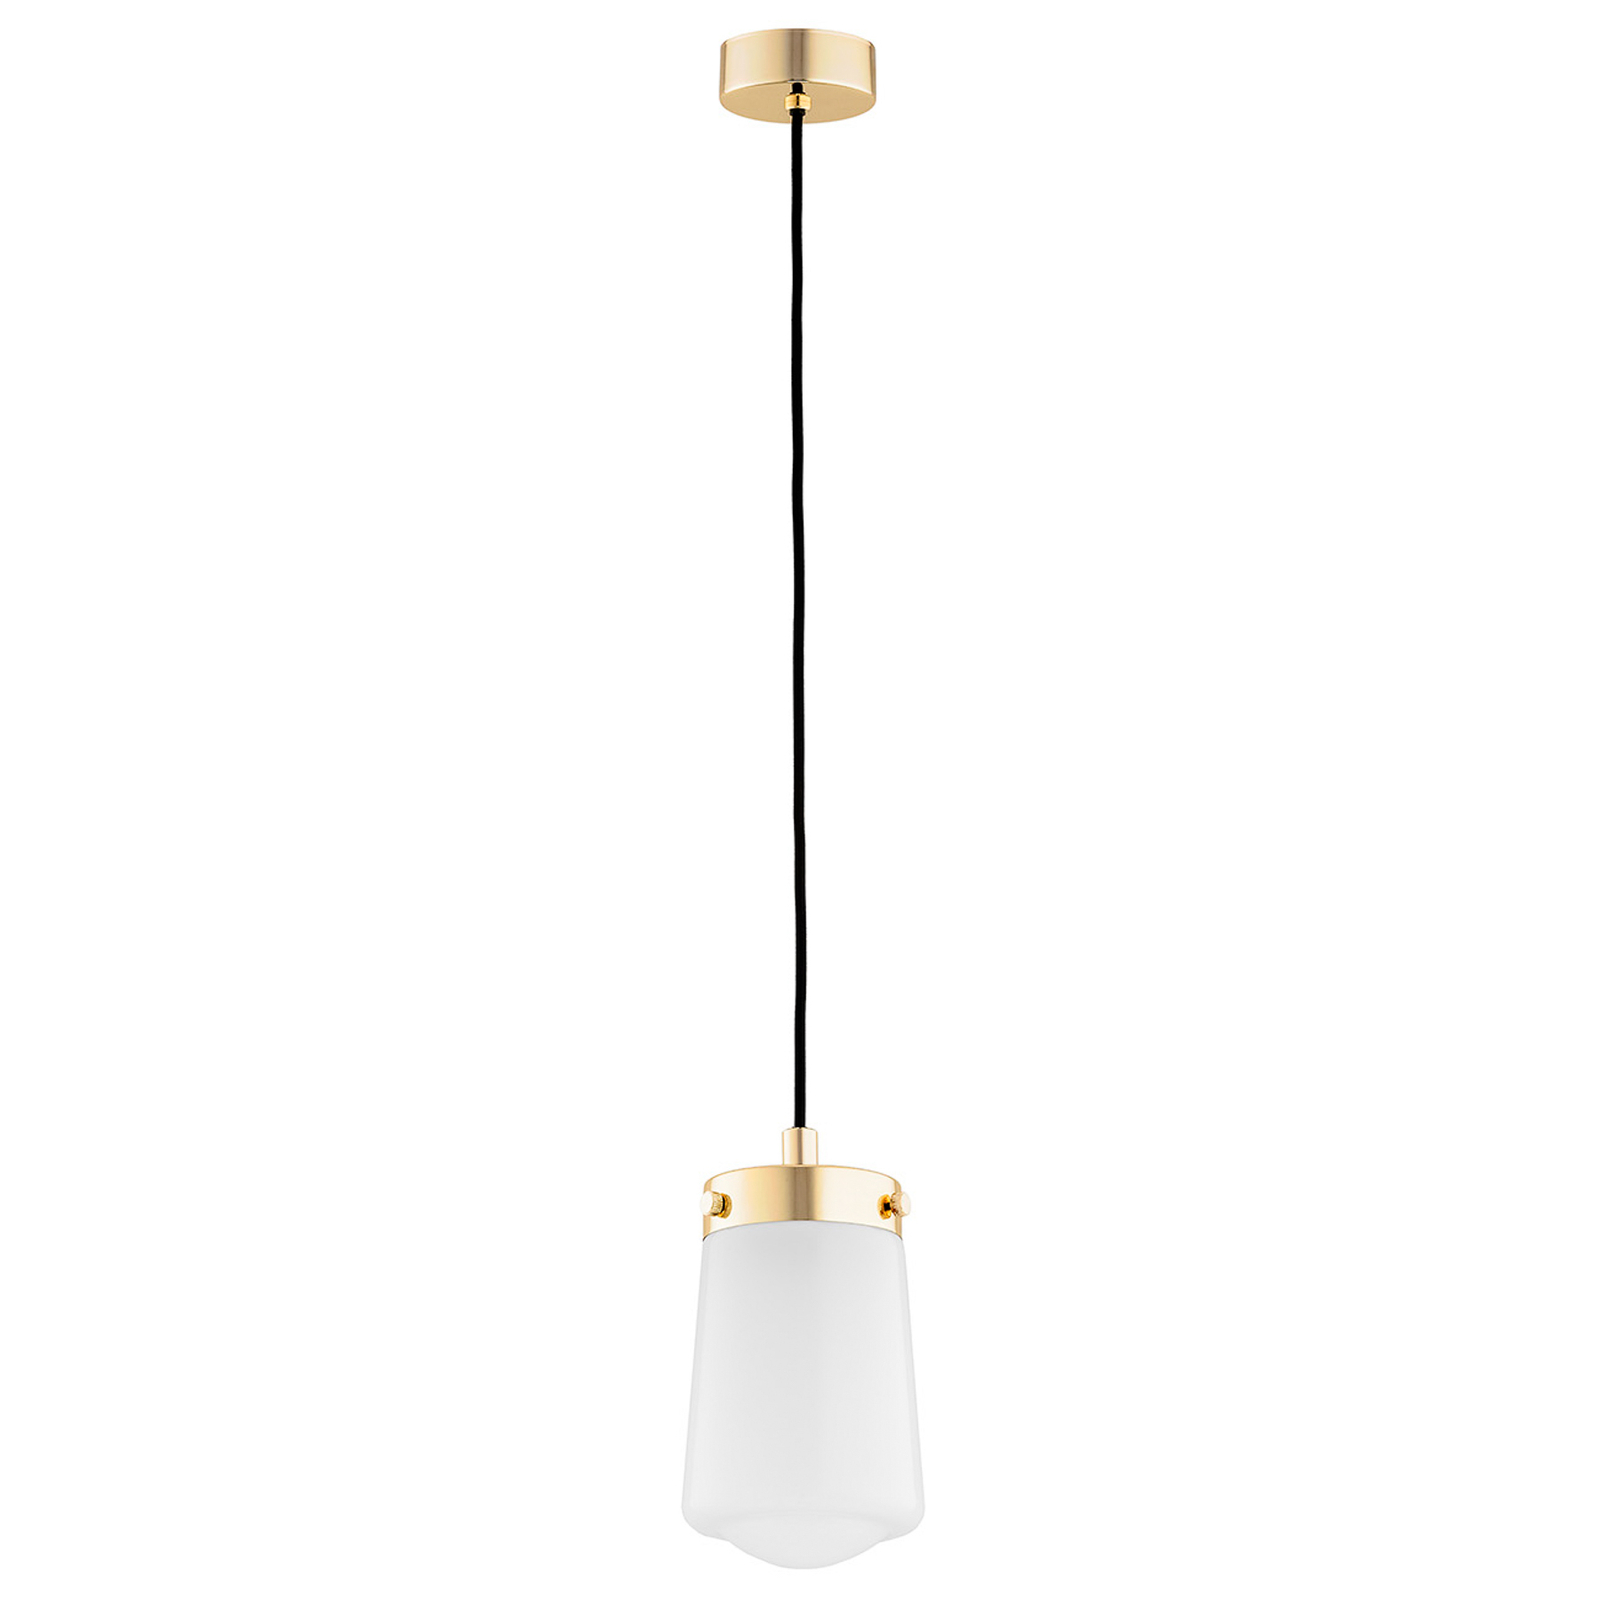 Pasadena hanglamp, 1-lamp, messing/wit